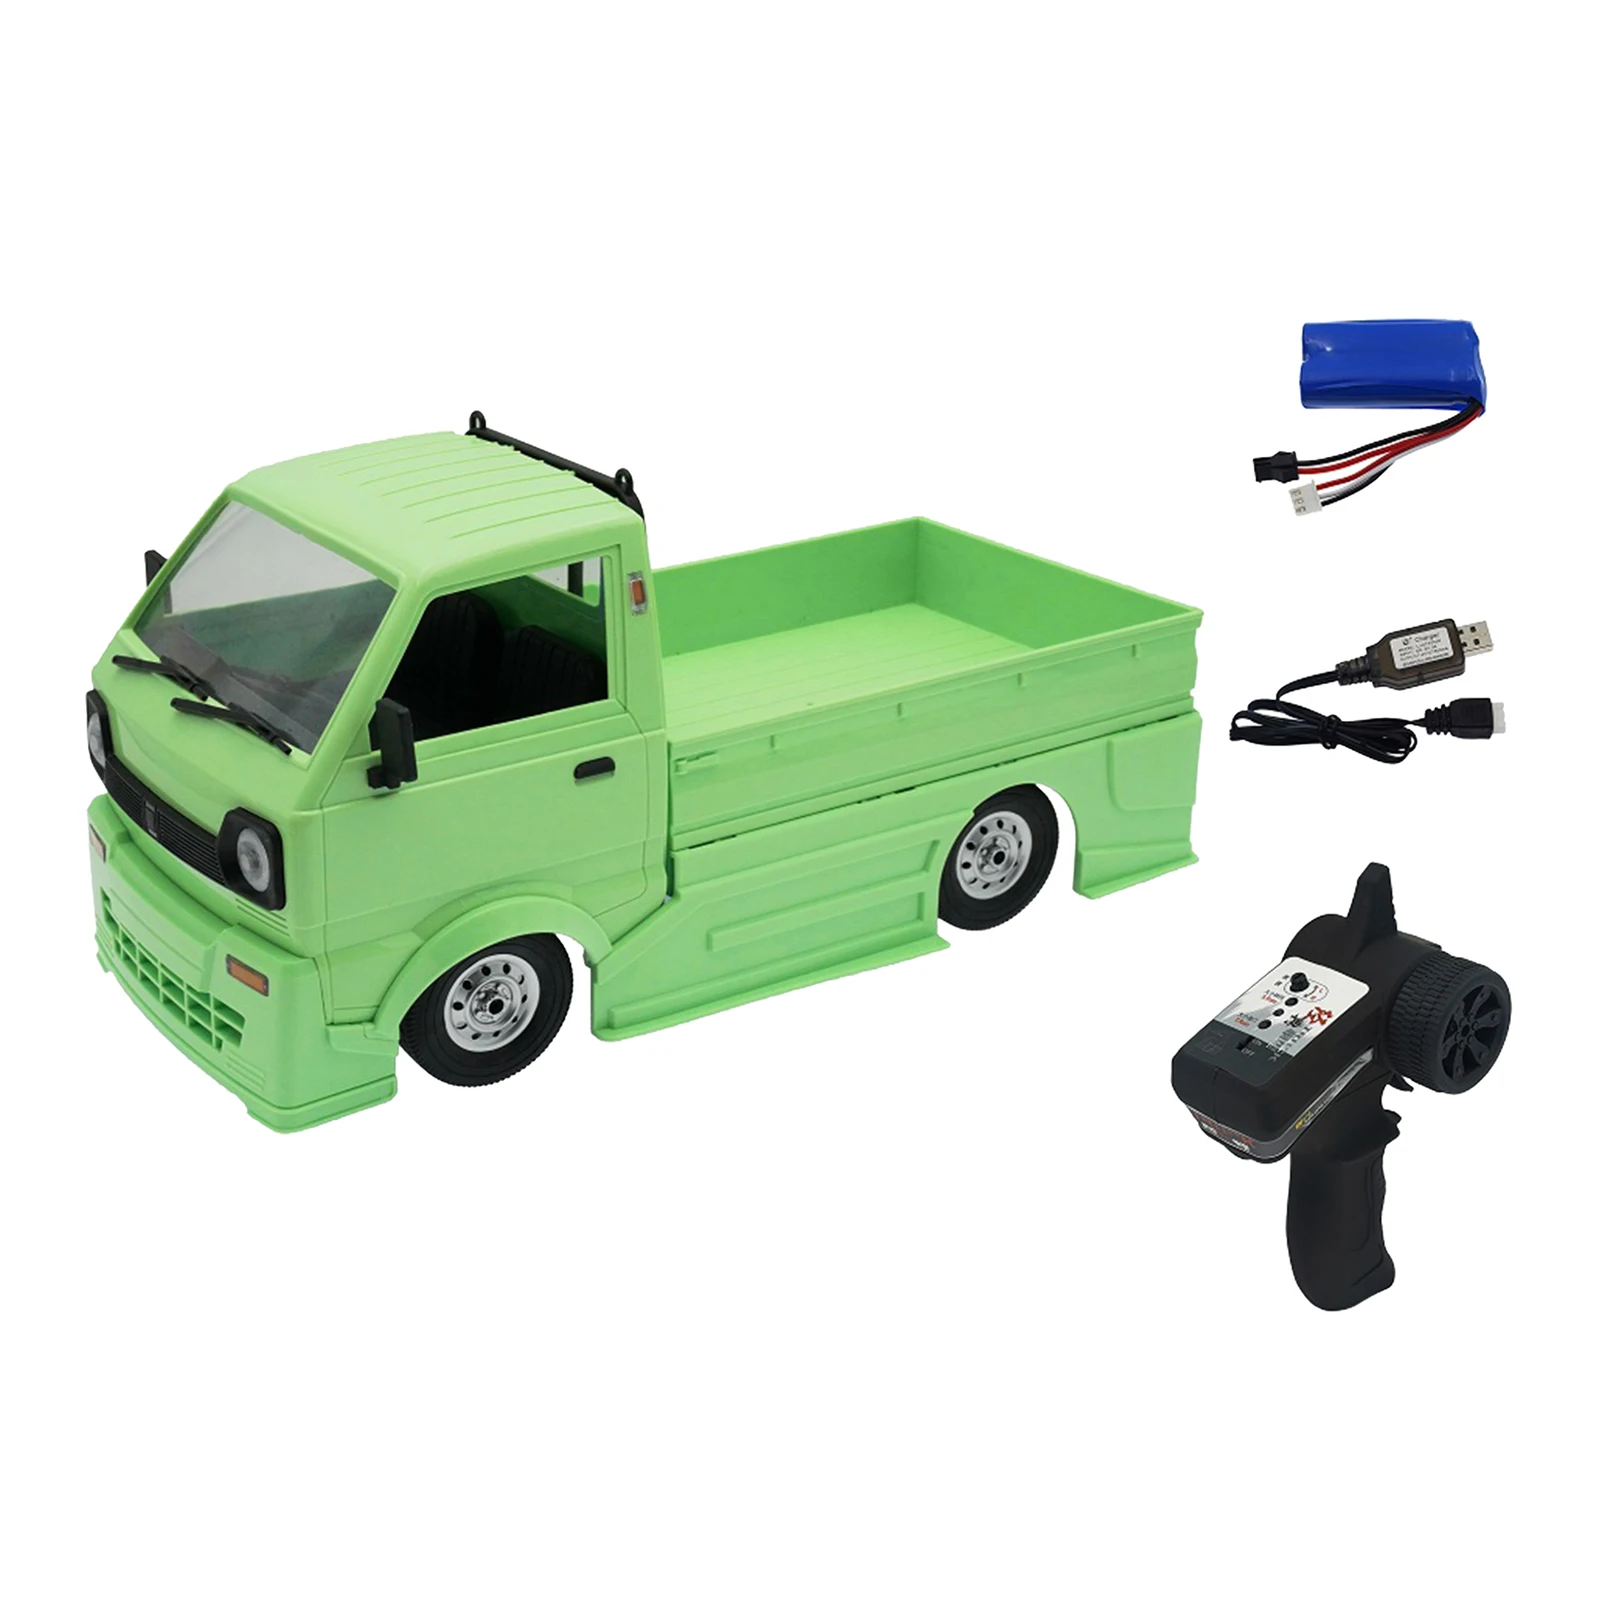 

WPL D12 масштаб 1:10 2WD Радиоуправляемый автомобиль имитация альпинистский грузовик Контроль расстояния 30-35 м для детей подарки игрушки